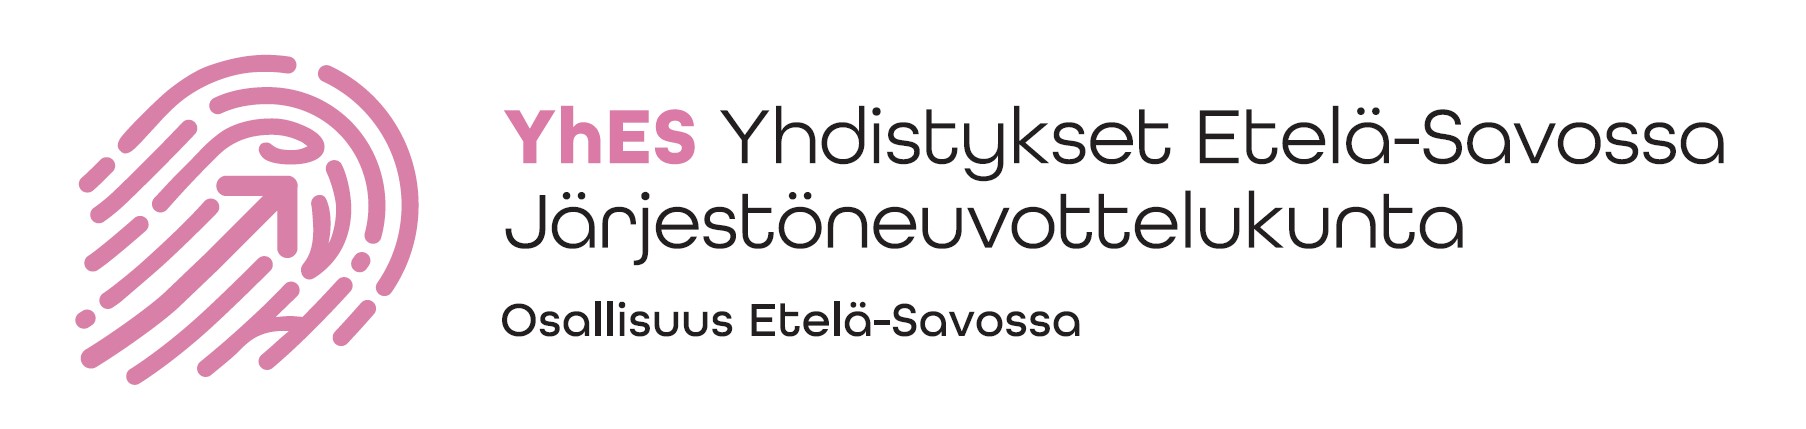 Logo YhES - Yhdistykset Etelä-Savossa